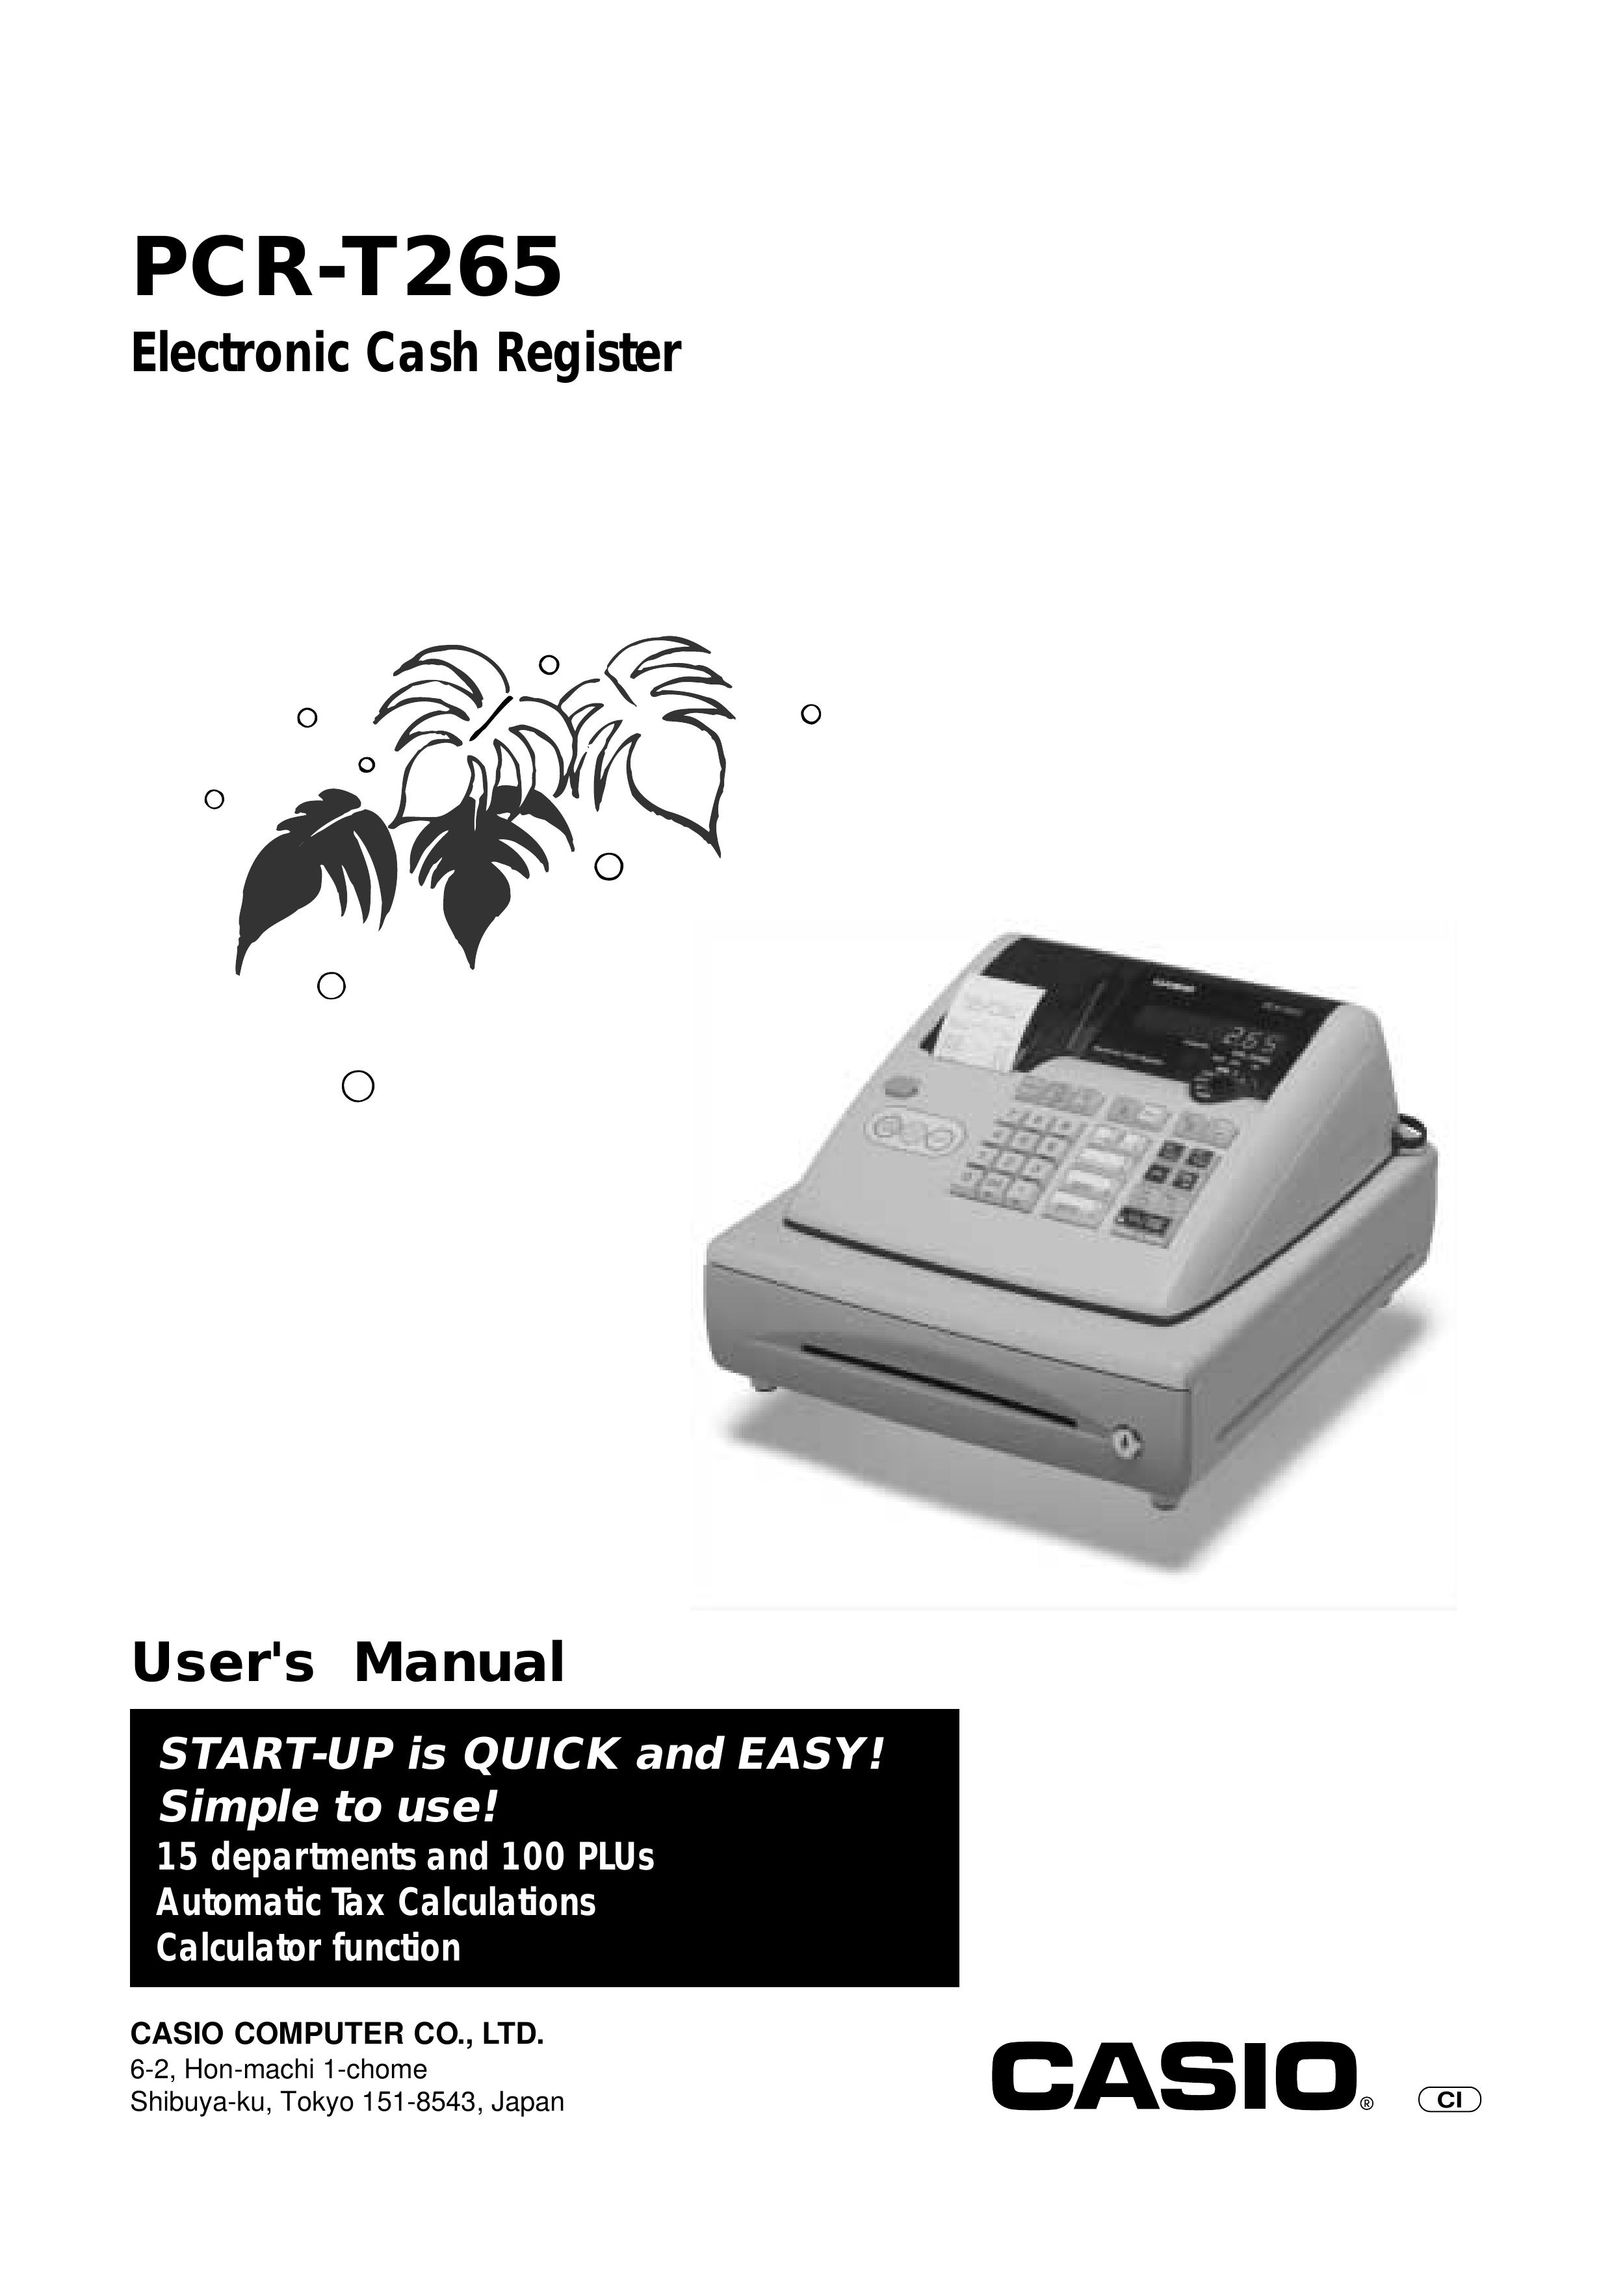 Casio PCR-T265 Cash Register User Manual